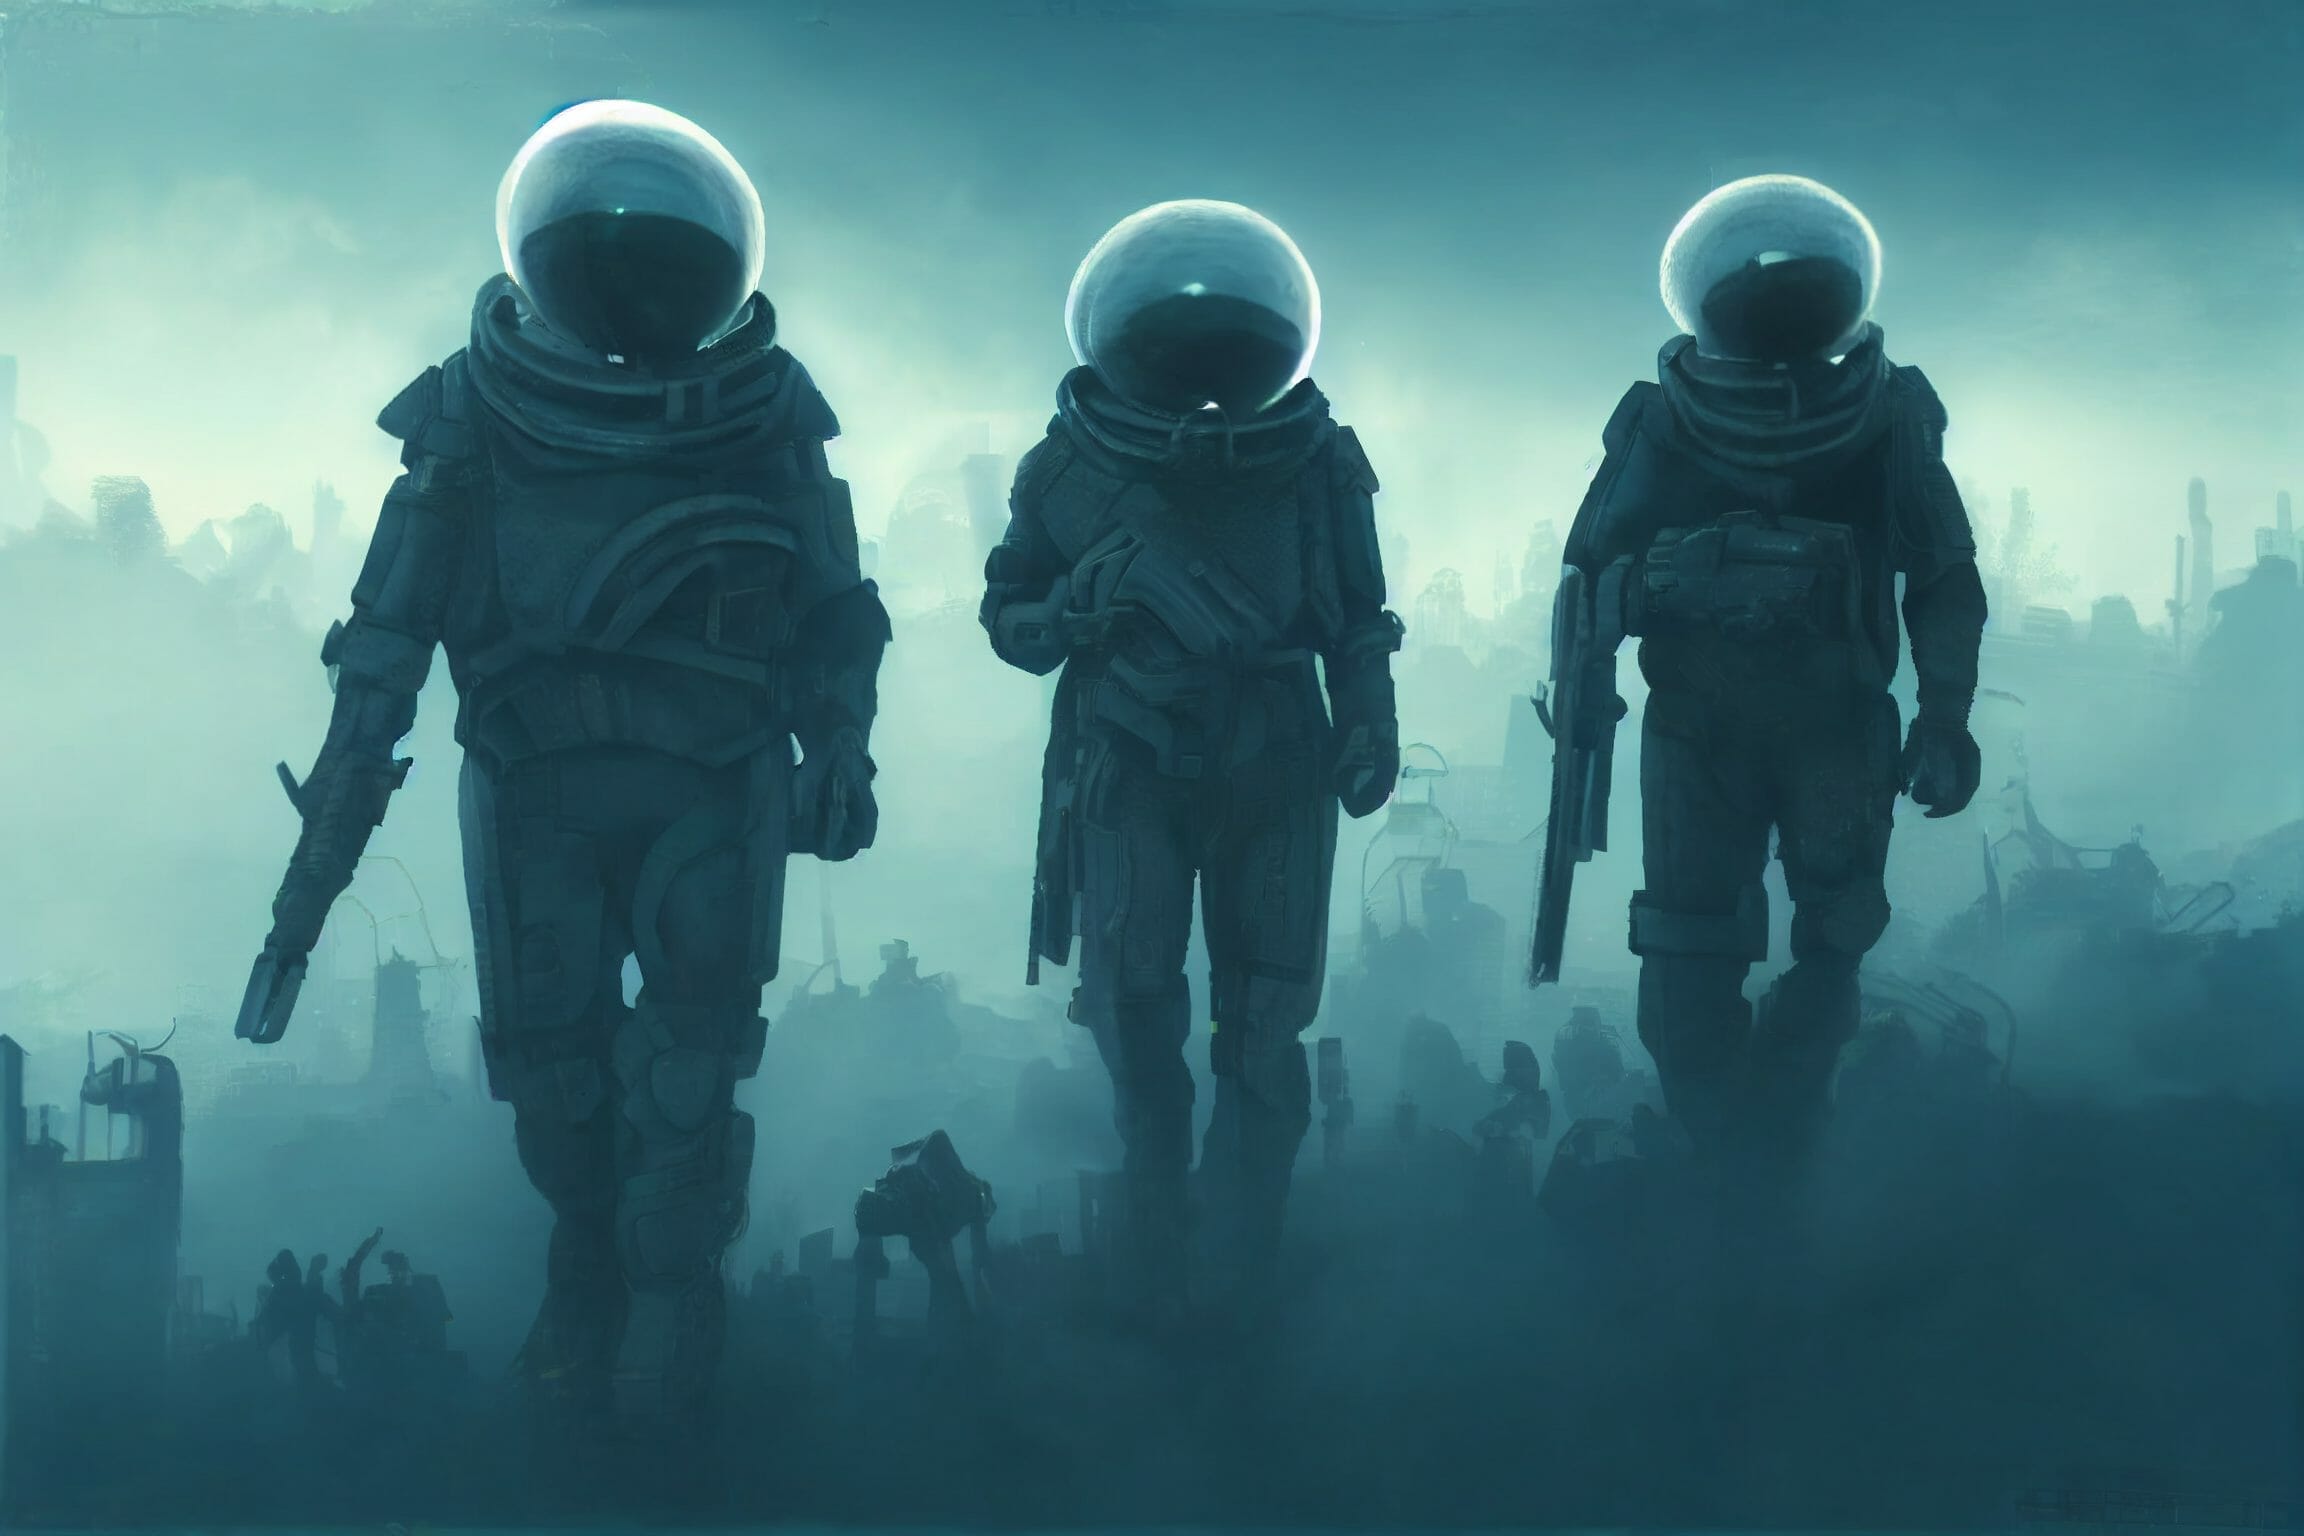 Spacesuited mercenaries walk across ruins